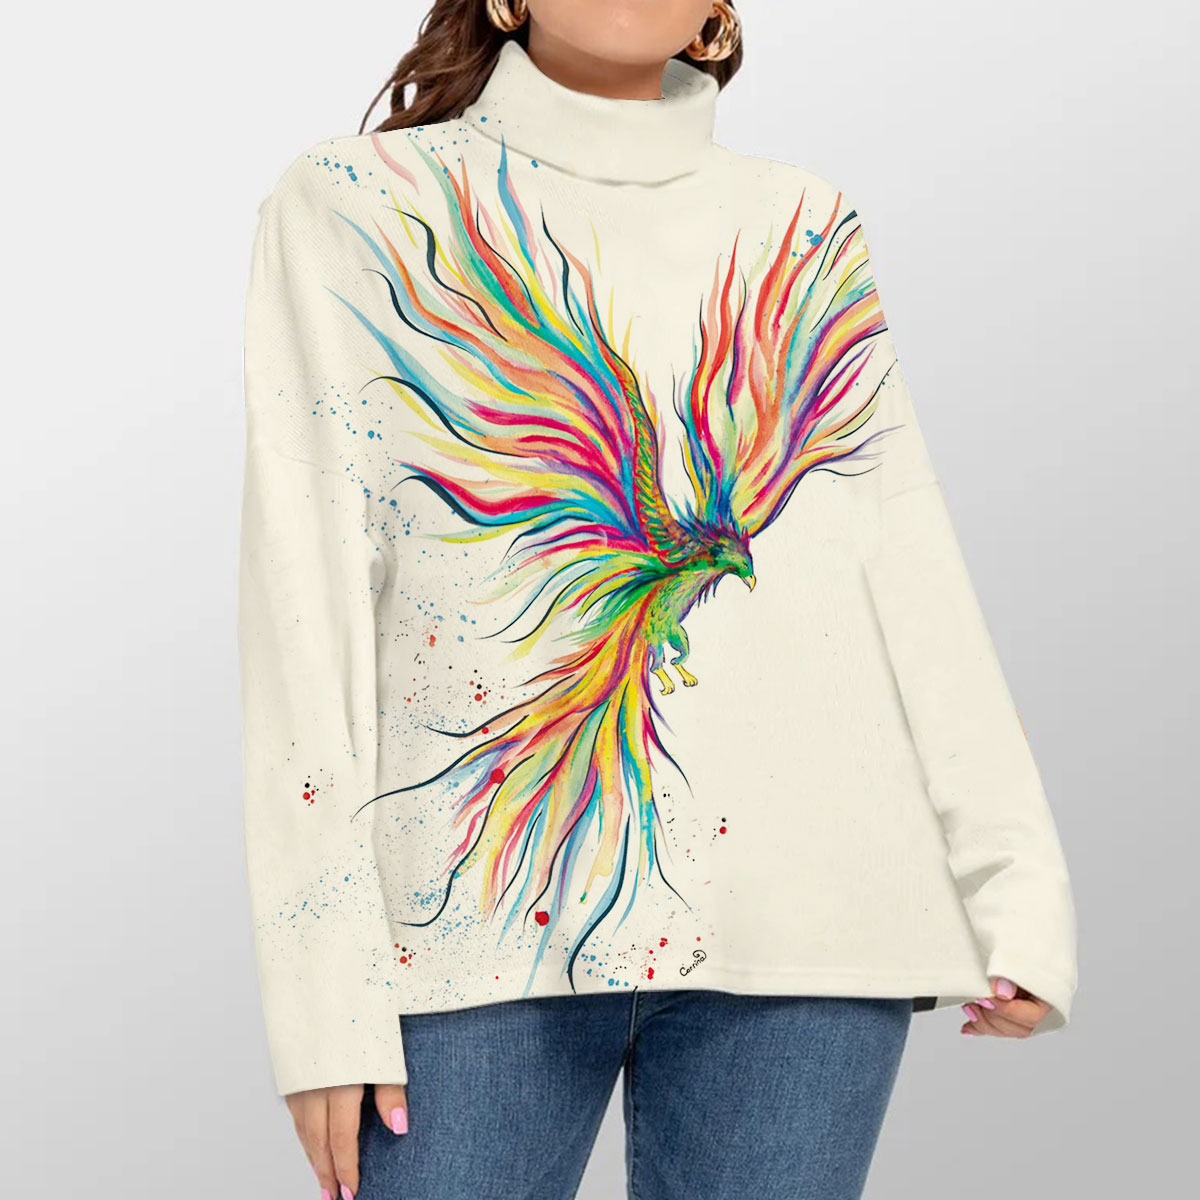 Watercolo Phoenix Turtleneck Sweater_1_2.1